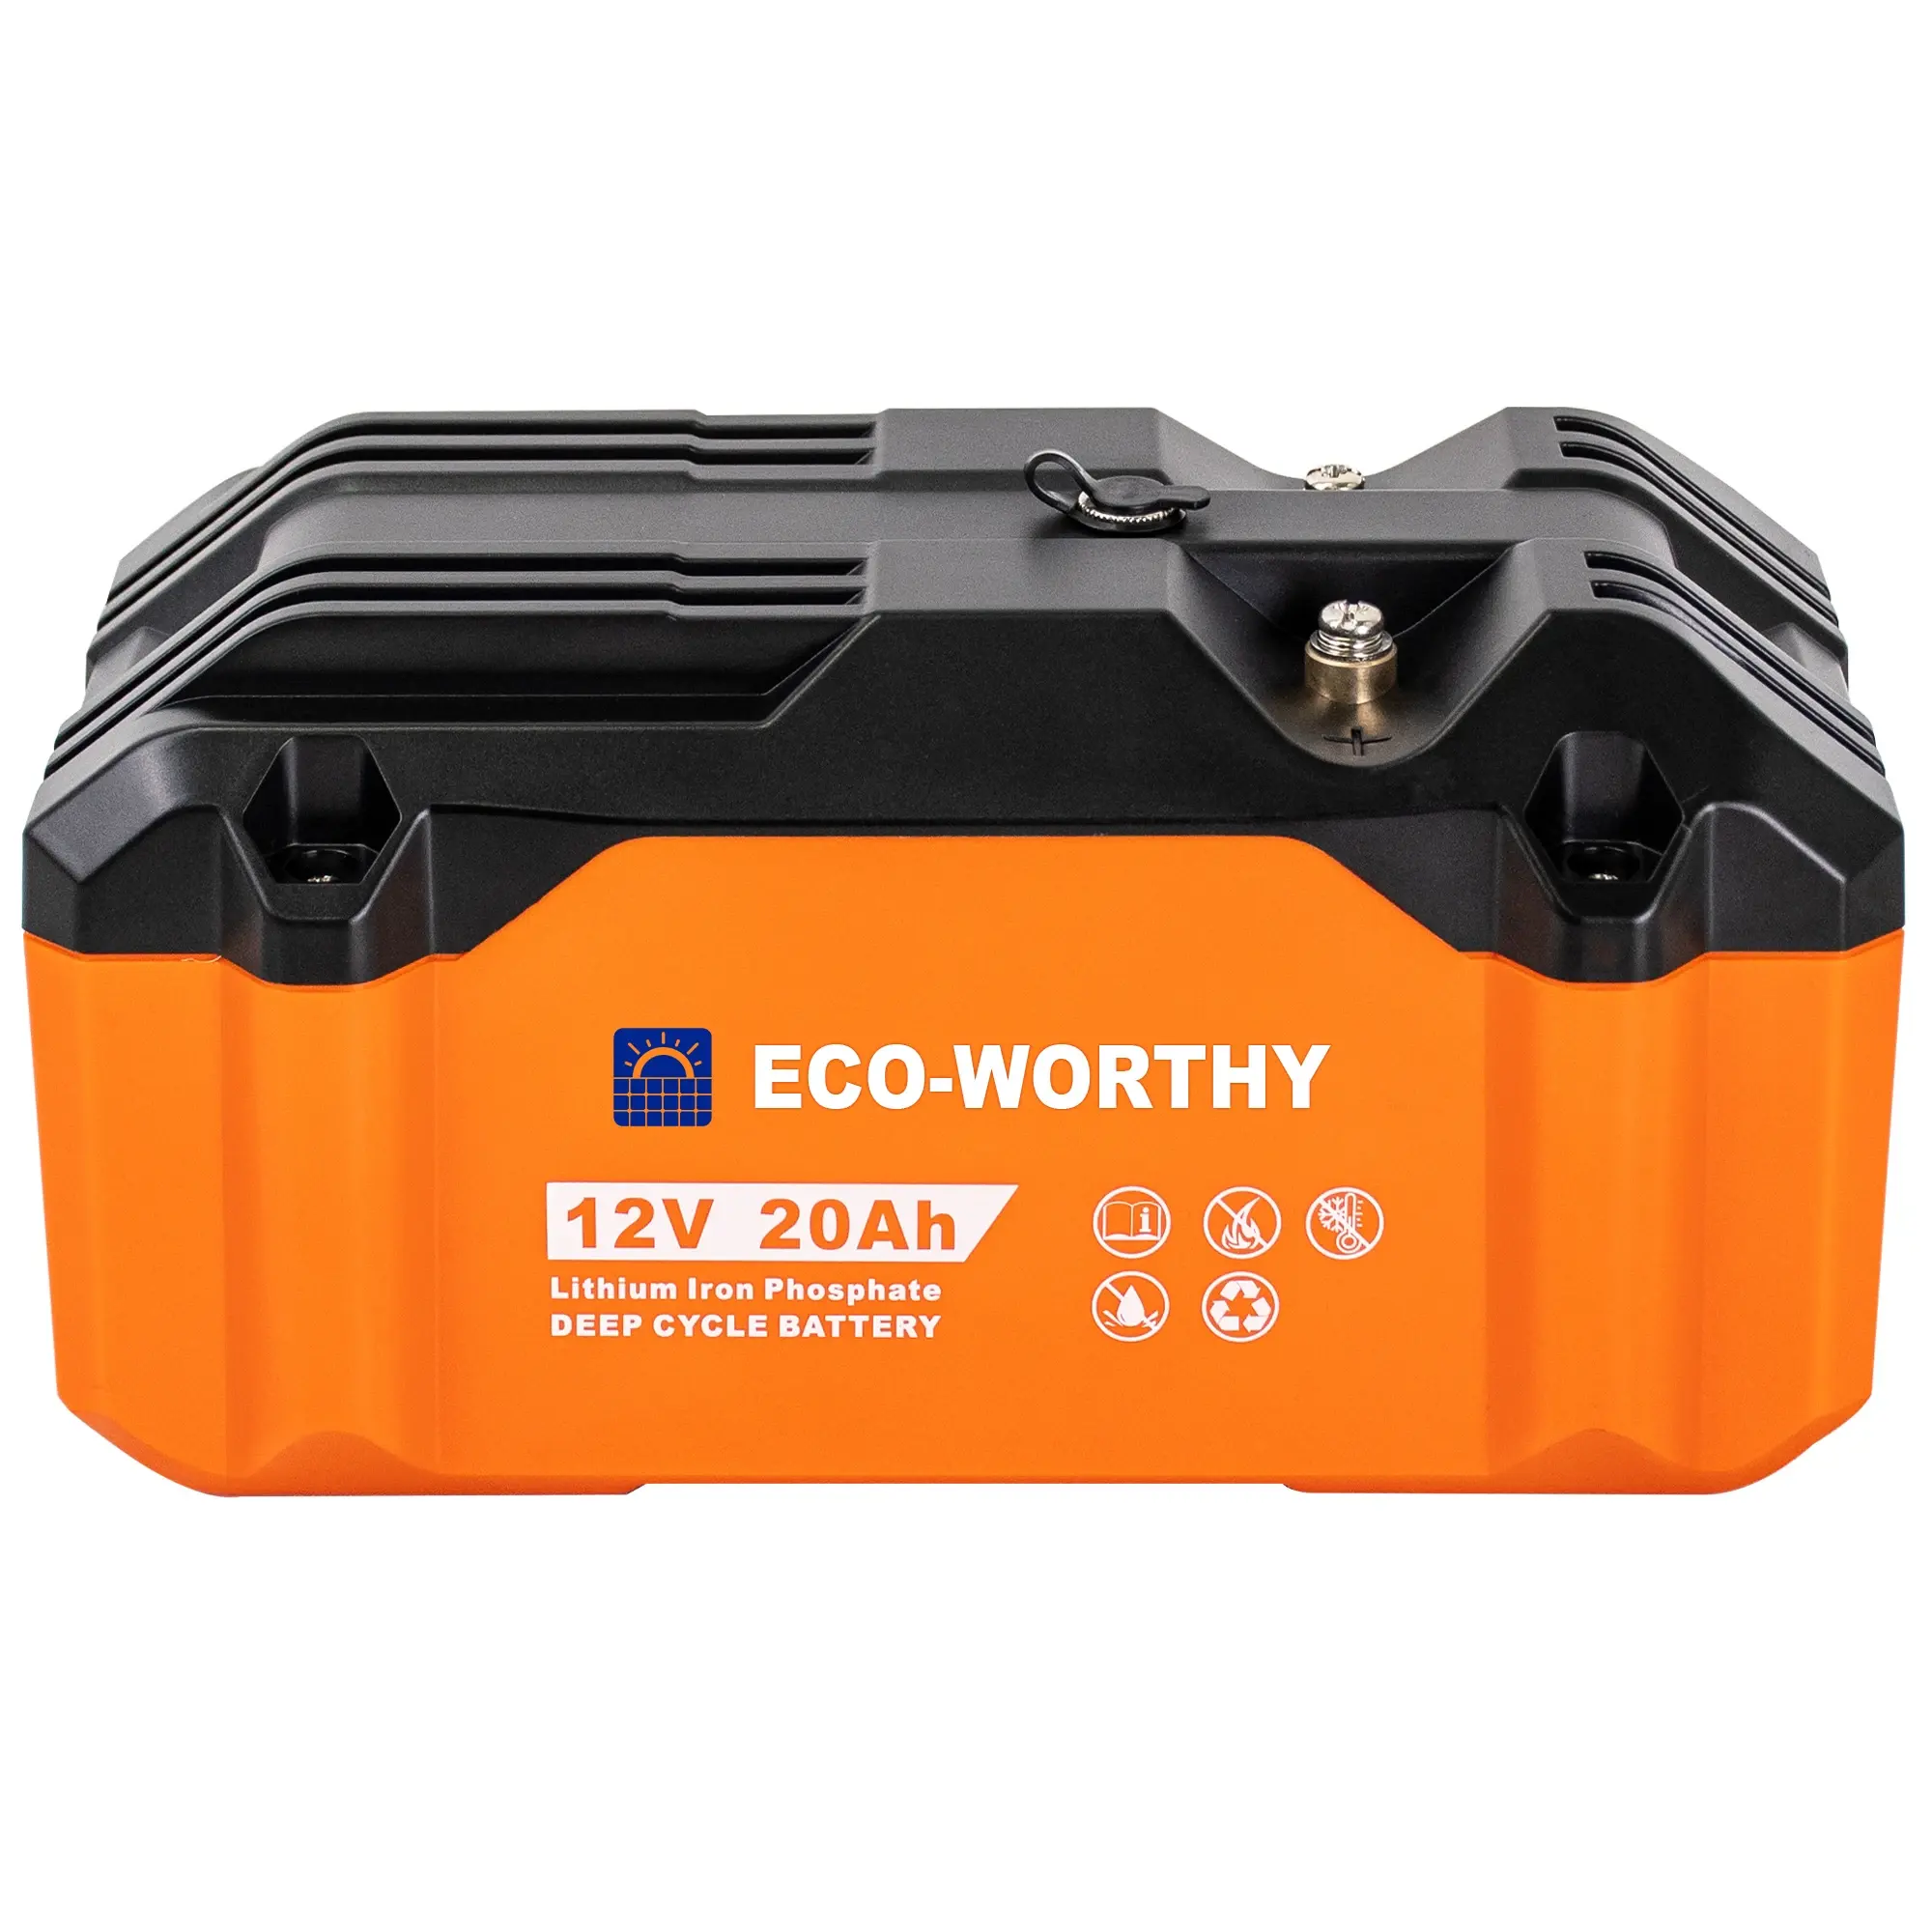 Eco-worthy 12v 20ah Home Power System auto bateria de lítio recarregável do bloco Lifepo4 do íon